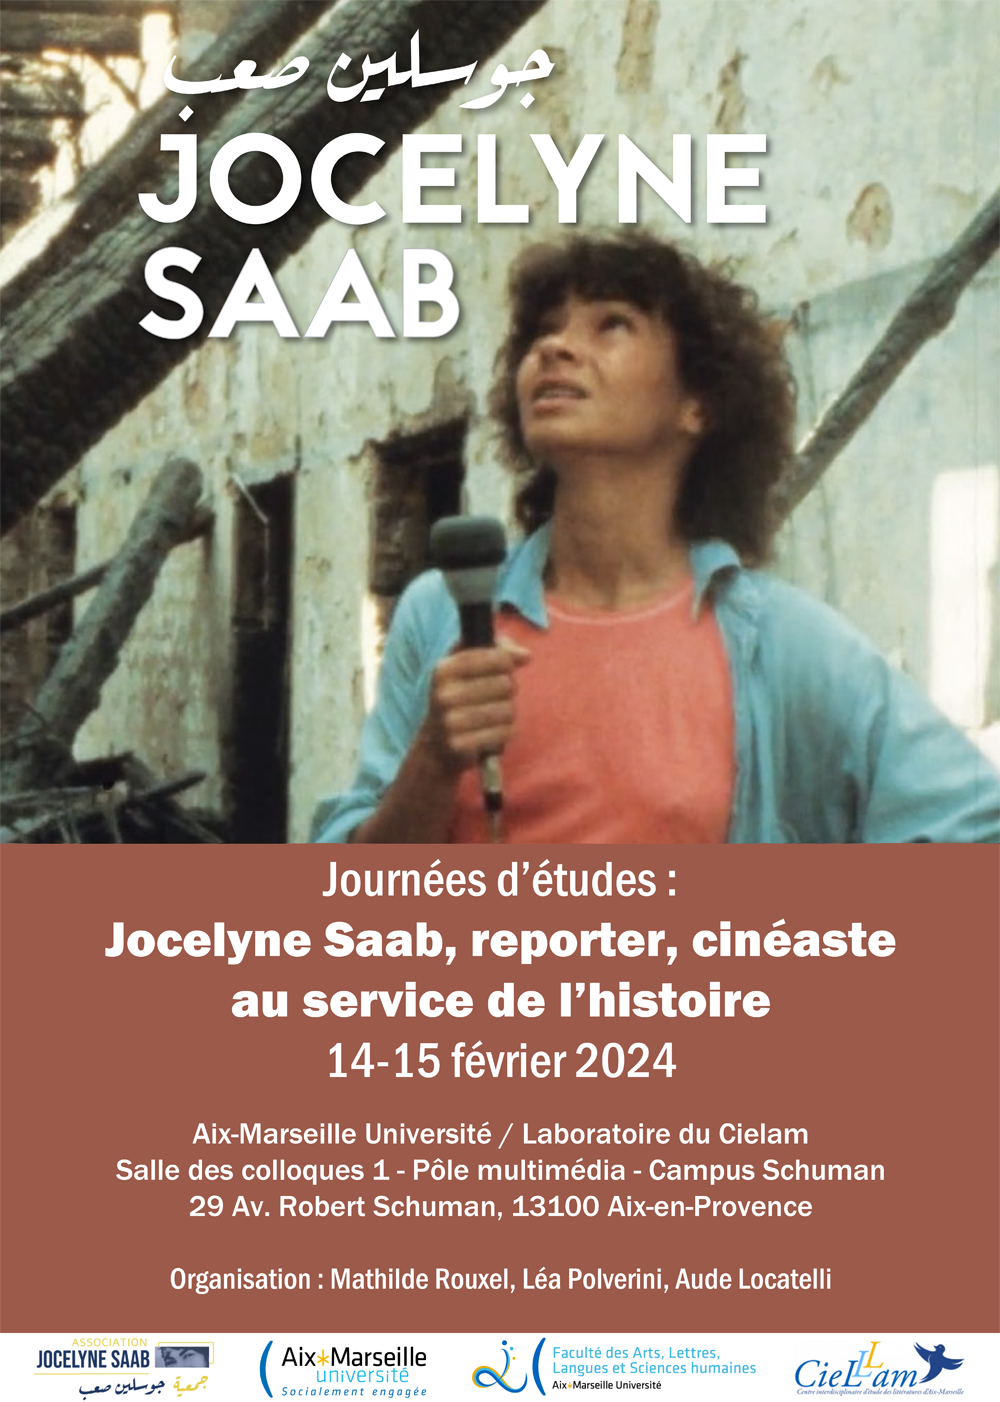 Jocelyne Saab, reporter, cinéaste, au service de l’histoire (Aix-en-Provence)